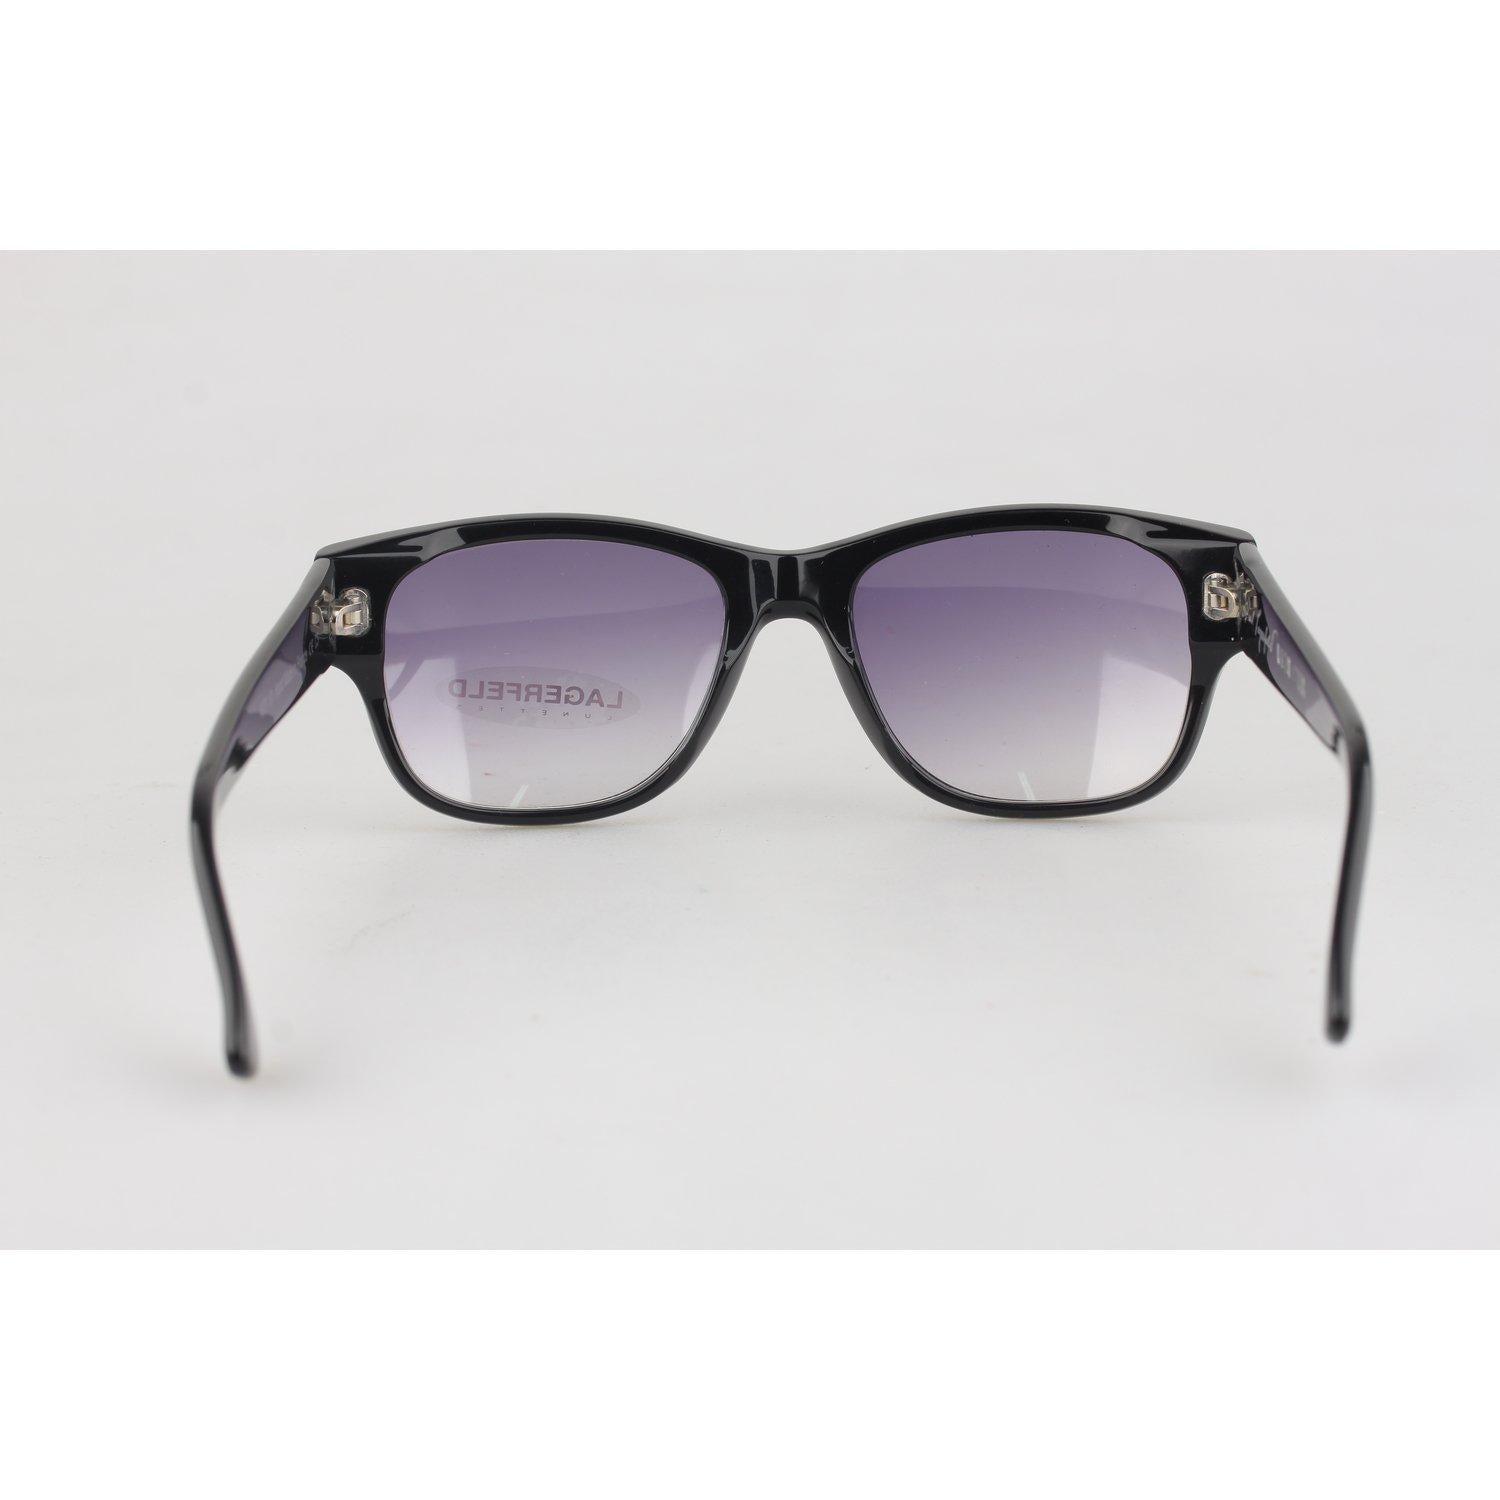 Karl Lagerfeld Vintage Sunglasses Mod 4221 01 3